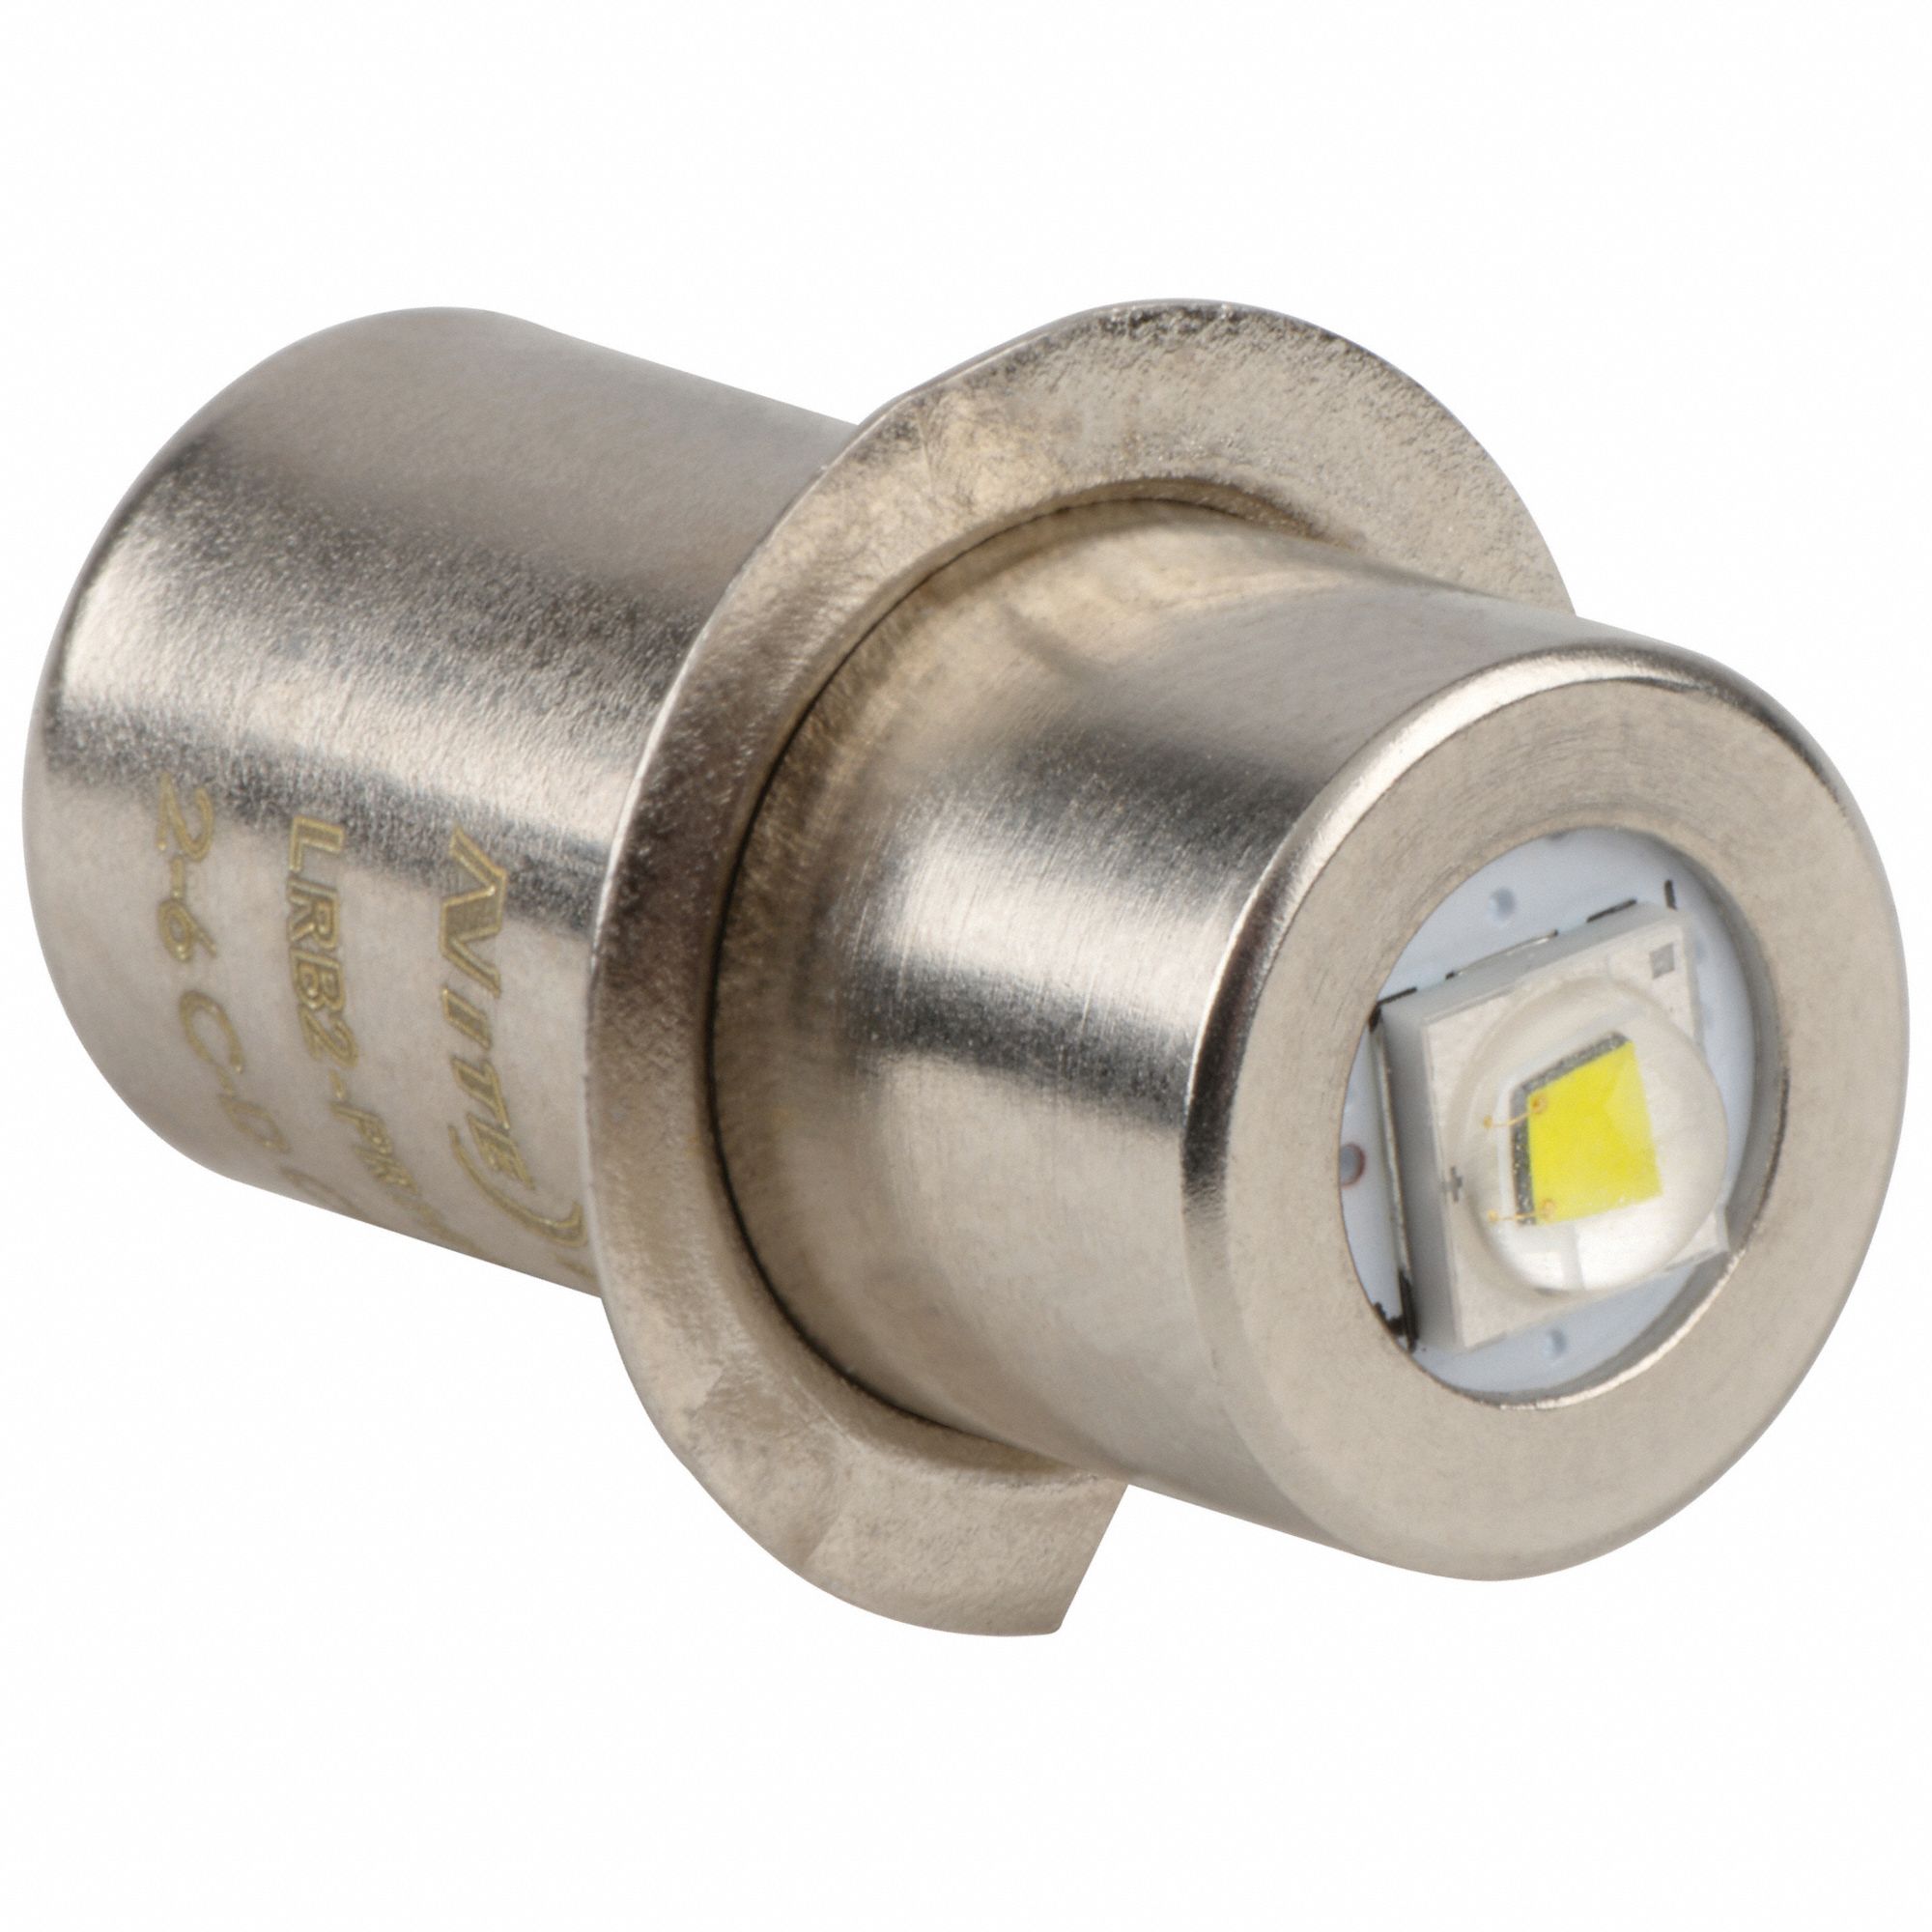 LED, Universal, Replacement Bulb, 74 Lumens - 30JZ57|LRB2-07-PRHP - Grainger